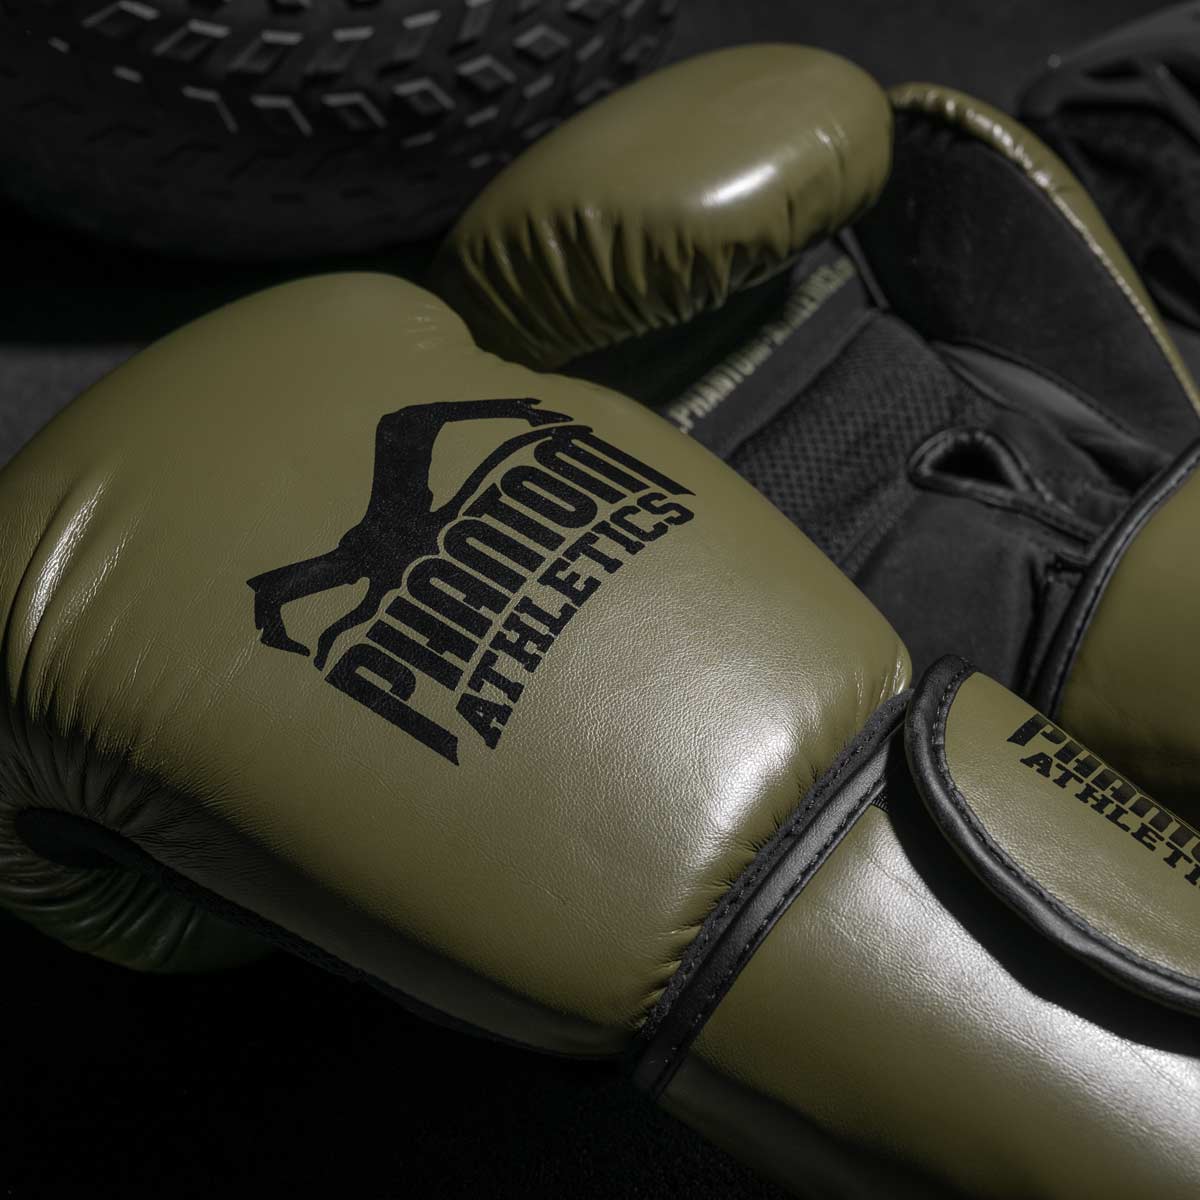 Die Phantom Elite ATF Boxhandschuhe für dein Kampfsport Training. Profi Boxhandschuhe mit fantastischer Polsterung, Mesh Einsatz im Innenhandbereich sowie einem überragenden Handgelenkssupport. 